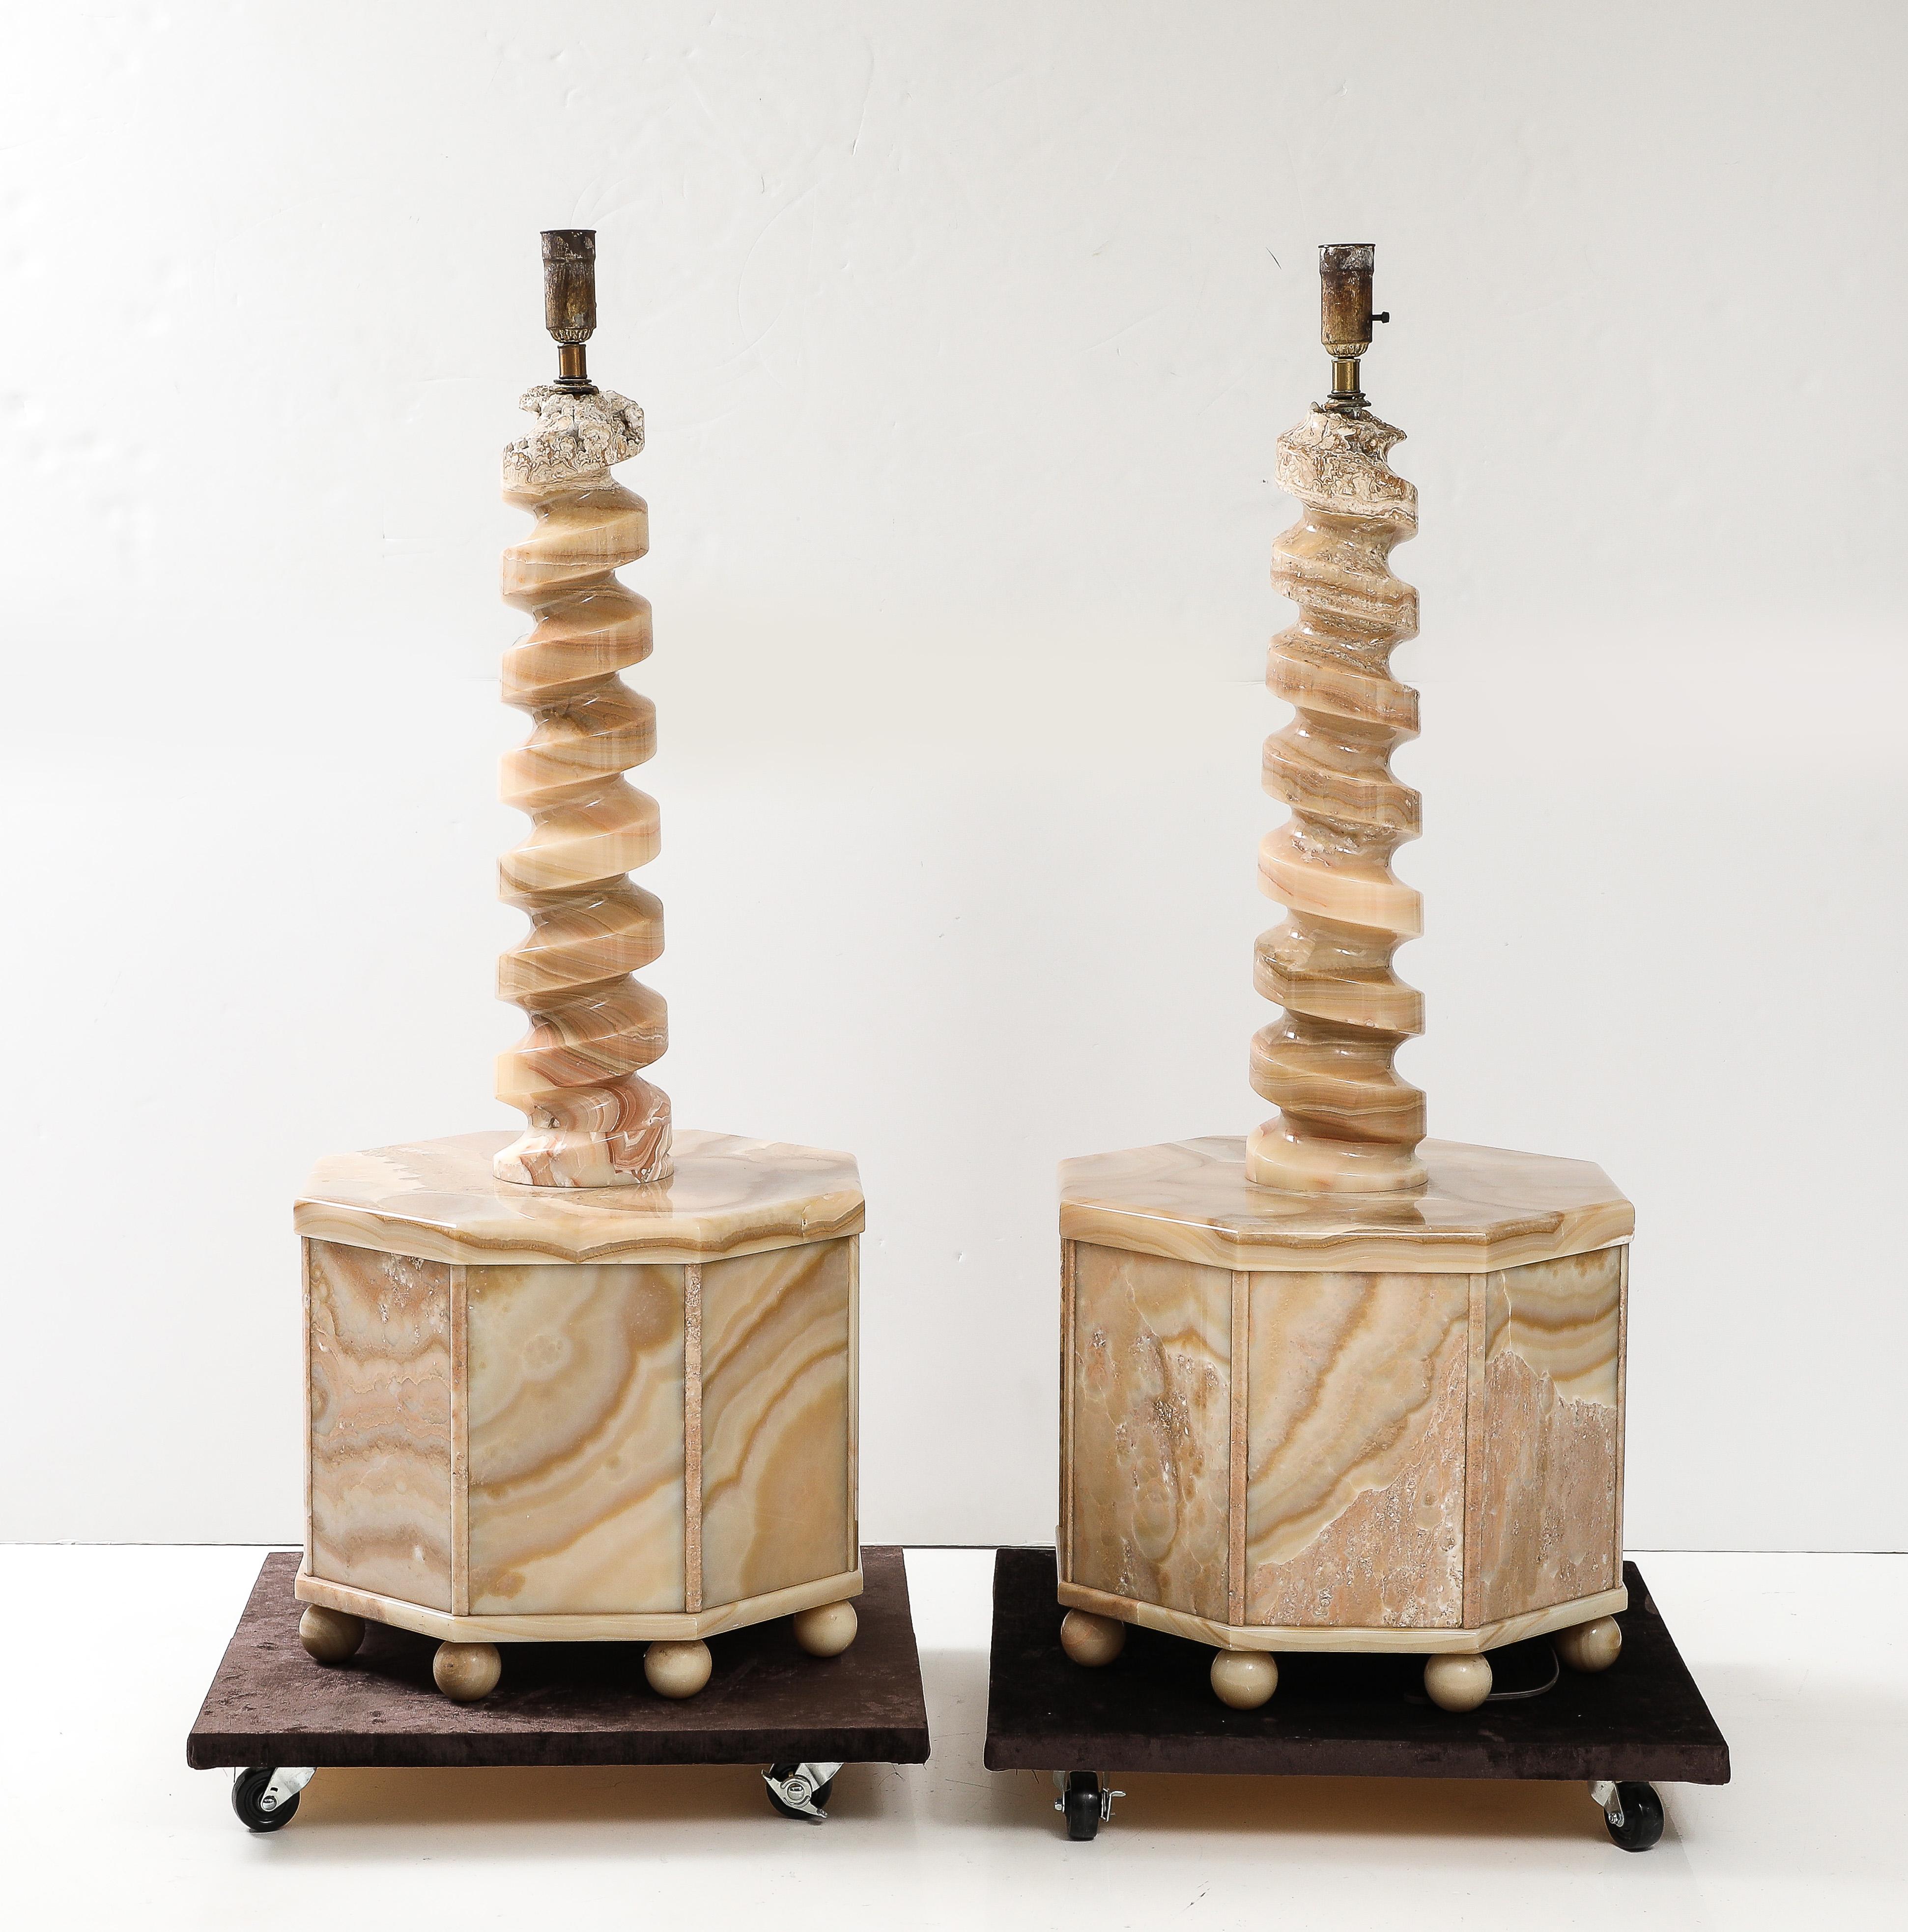 Spektakuläres Paar monumentaler polierter Onyx-Stehlampen.
Das Paar achteckiger Tischfüße sitzt auf Onyxkugeln  und Unterstützung  schön gearbeitete Korkenziehersäulen mit einzelnen Mogul-Lichtsteckdosen, die neu verkabelt wurden.
Die Tischgestelle